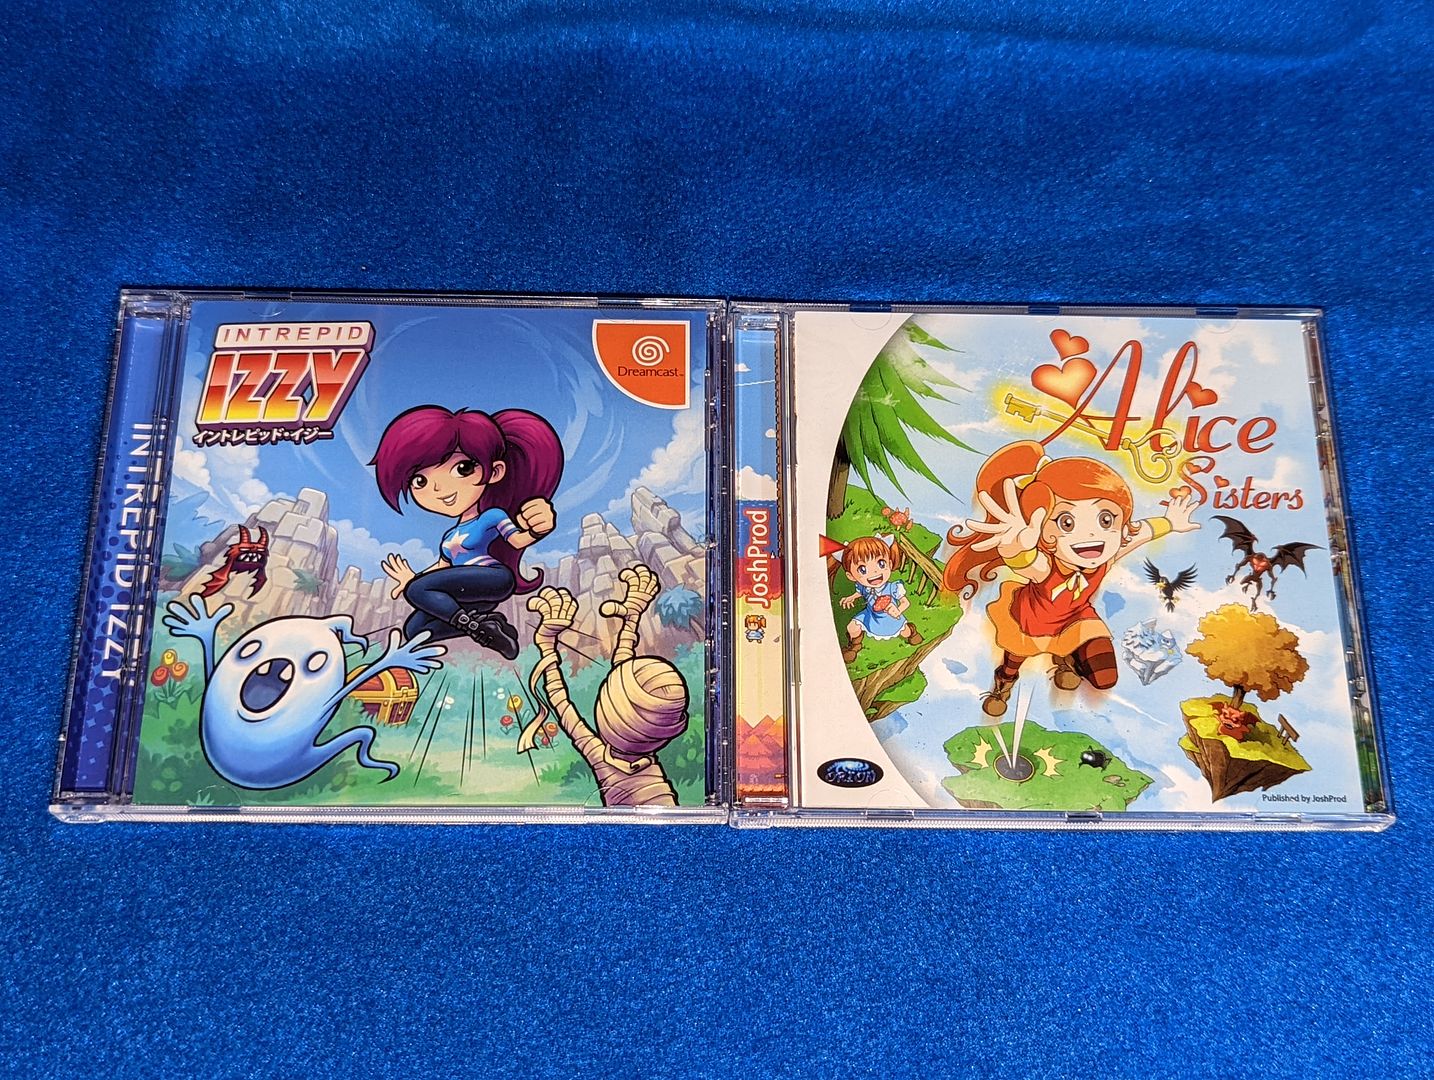 Sega_Dreamcast_(46).jpg